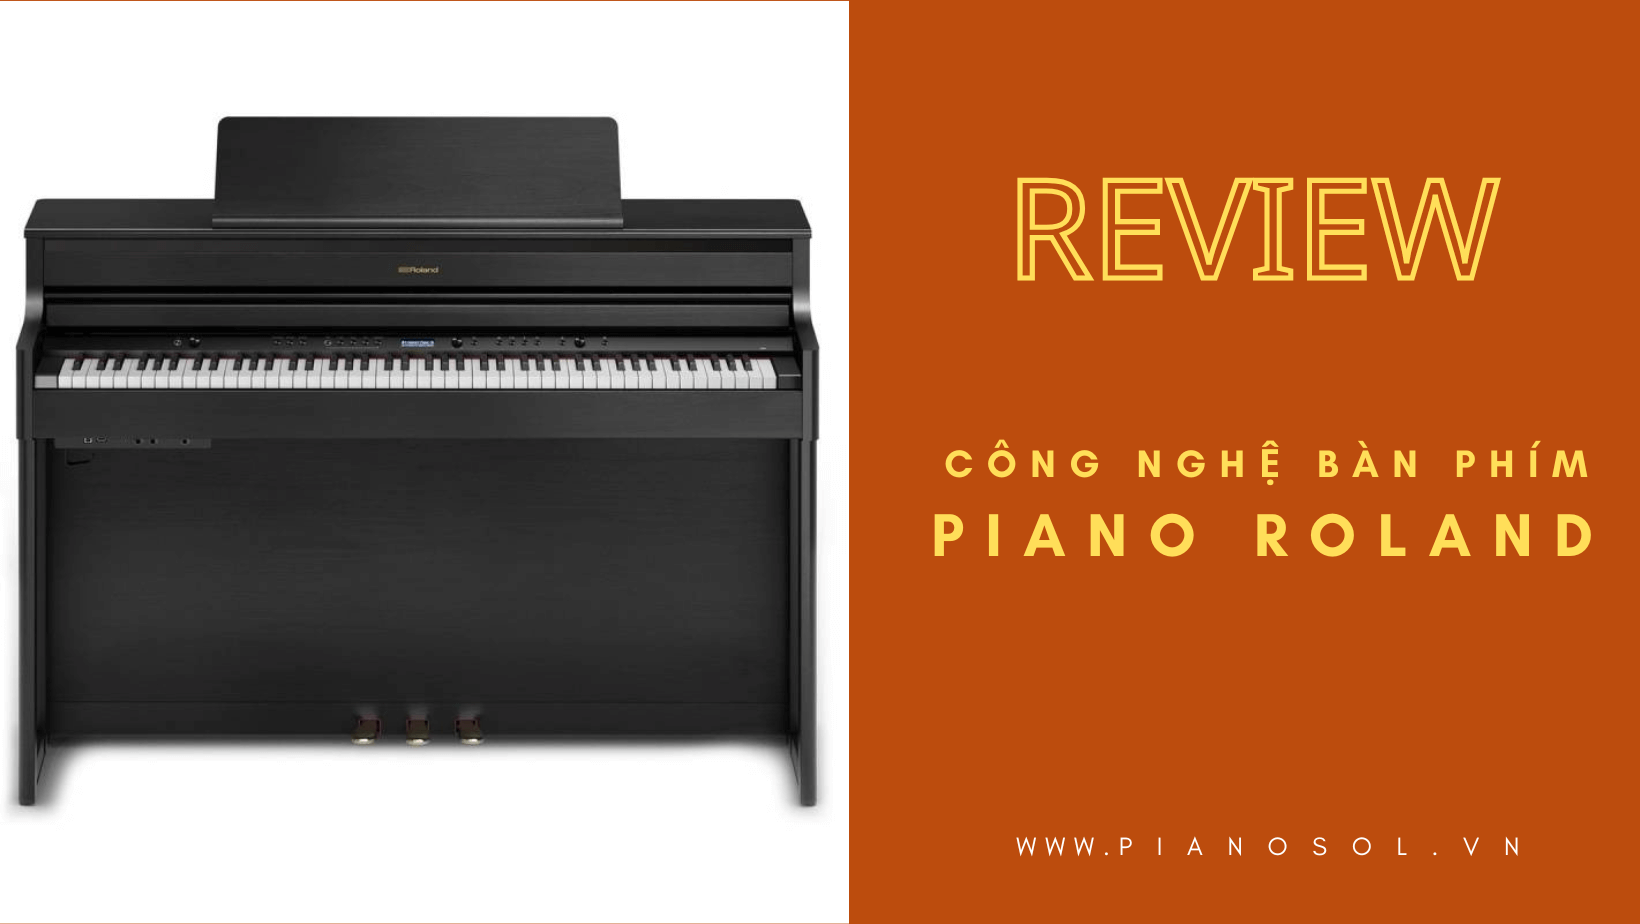 Review công nghệ bàn phím piano điện Roland